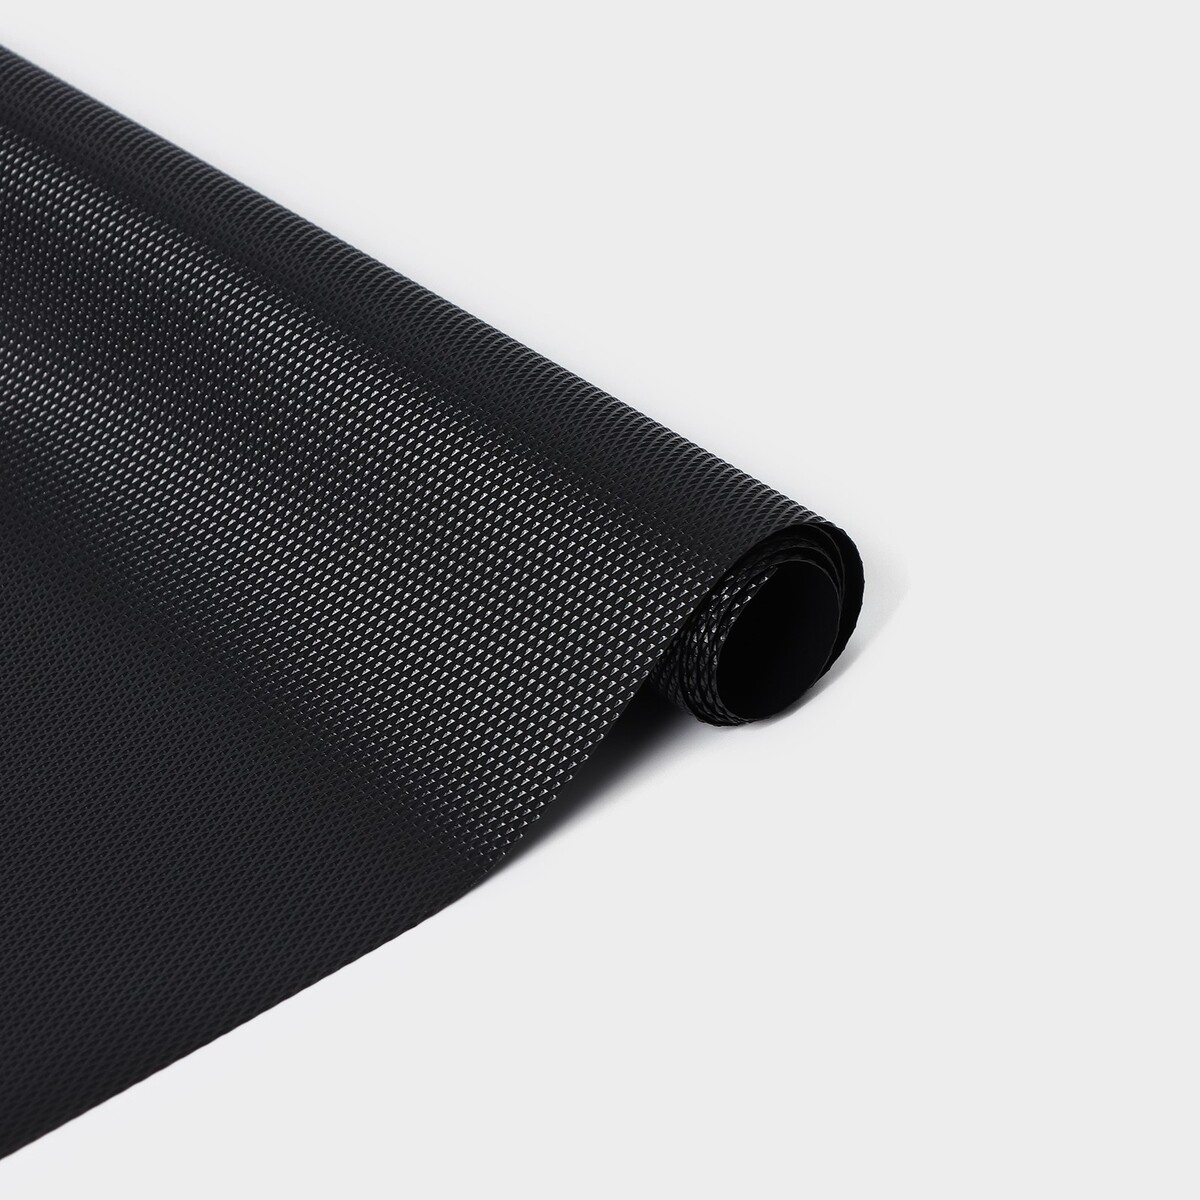 Коврик противоскользящий ladо́m elegiam, 30×150 см, цвет черный коврик противоскользящий ladо́m elegiam 30×150 см